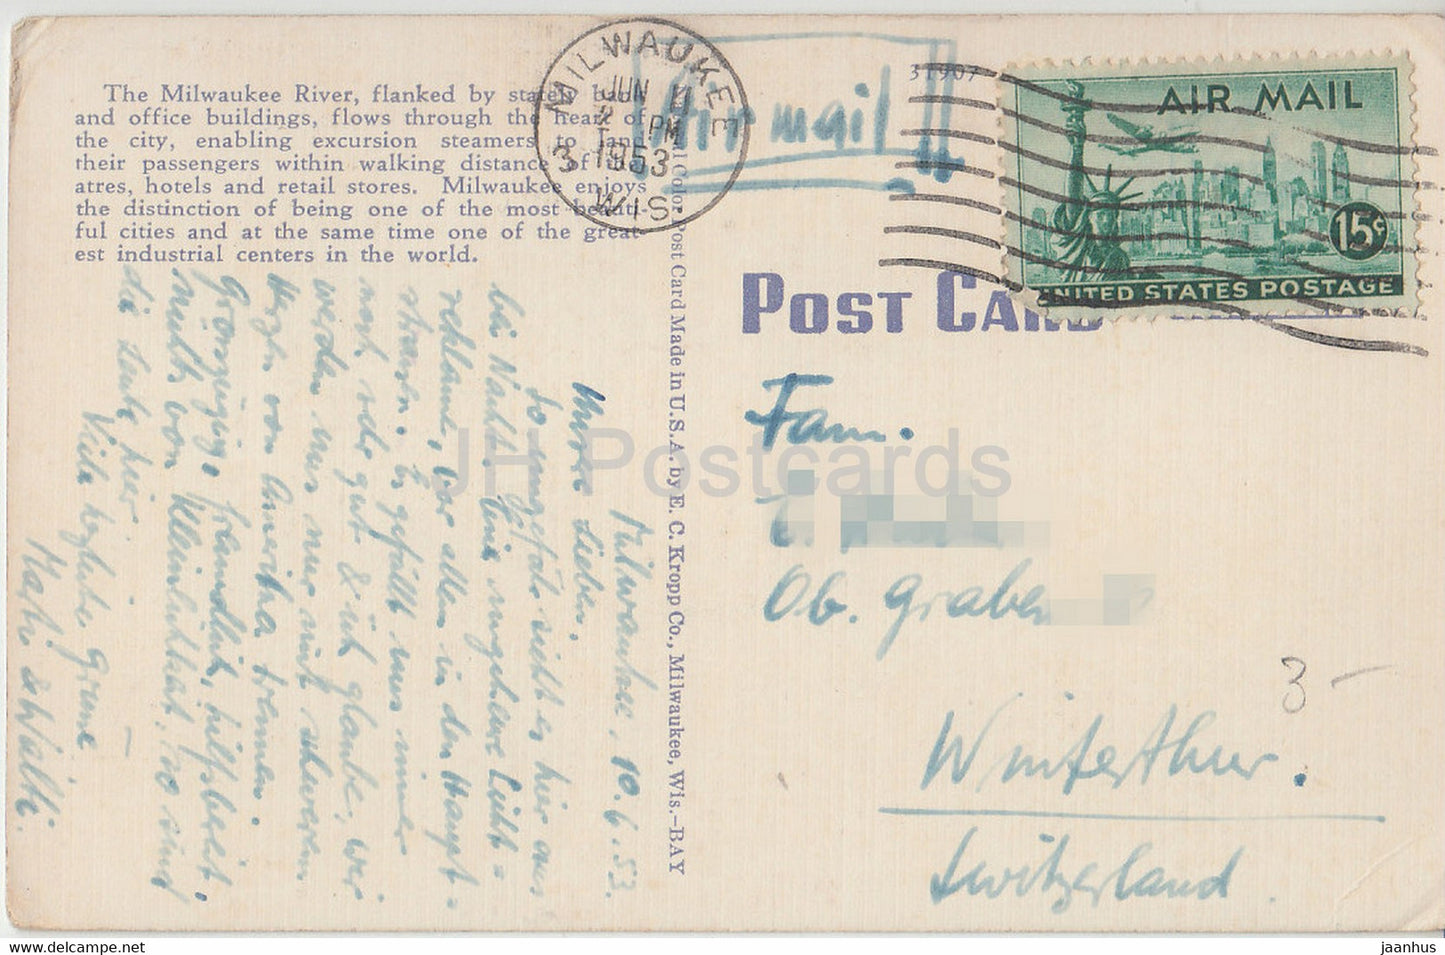 Milwaukee – Flussufer – südlich der Wells St Bridge – alte Postkarte – 1953 – USA – gebraucht